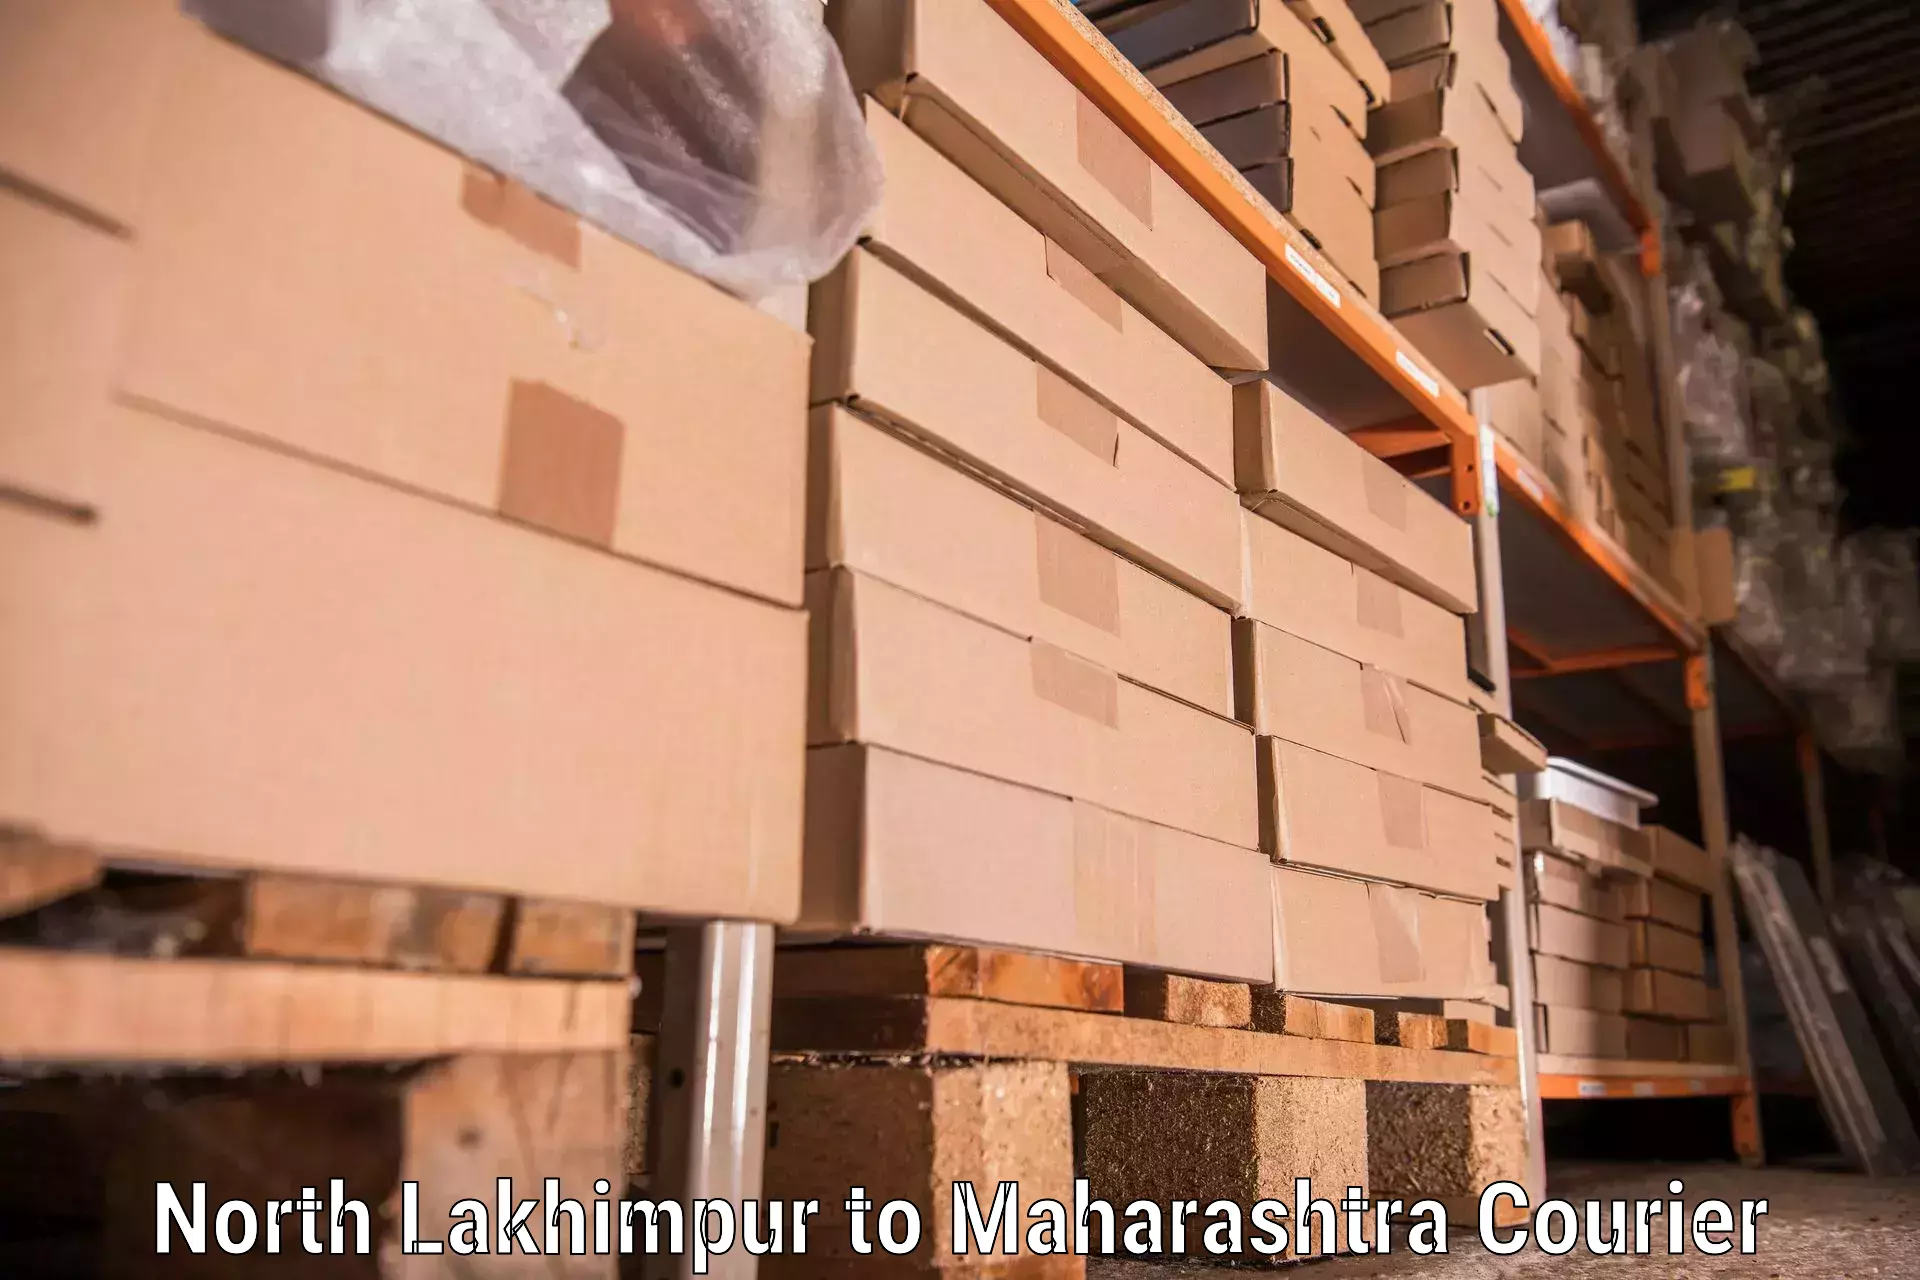 Furniture transport services North Lakhimpur to Andheri